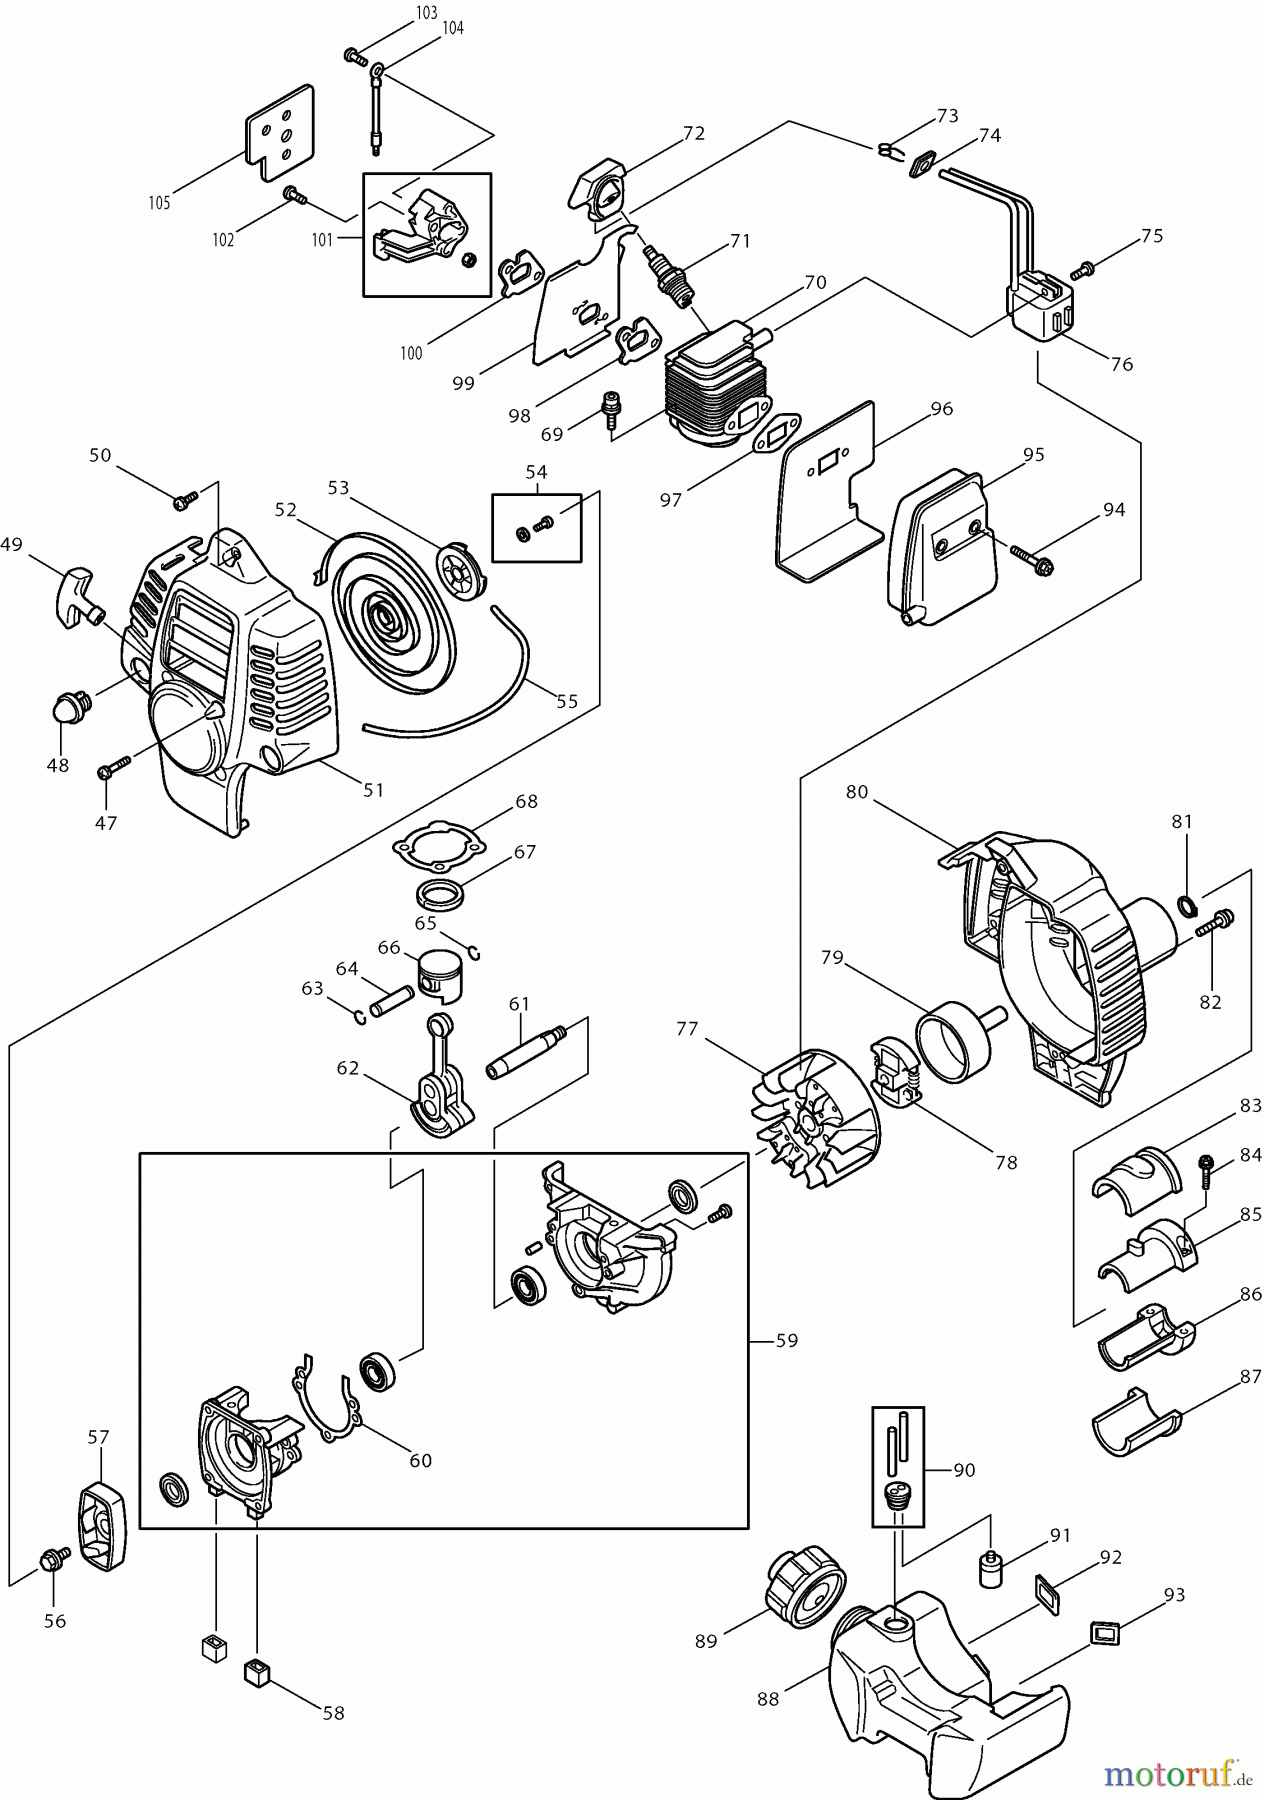  Dolmar Rasenkantenschneider PE-250 (USA) 2  Motor, Anwerfvorrichtung, Kupplung, Kraftstofftank, Schalldämpfer